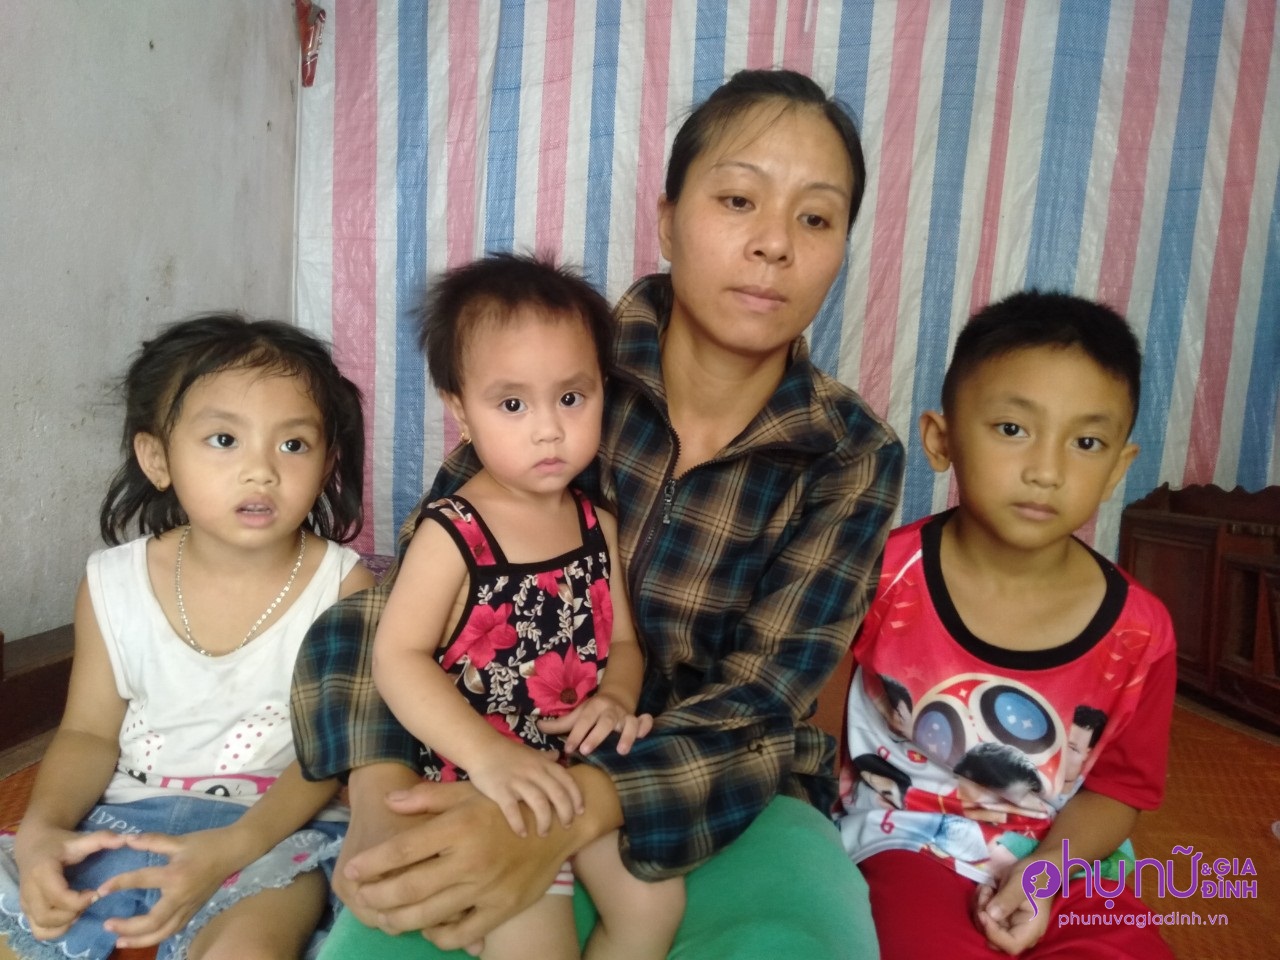 Chồng mất sau vụ nổ bình gas, góa phụ một nách 3 đứa con thơ ăn nhờ ở đậu kiếm sống nuôi con qua ngày - Ảnh 1